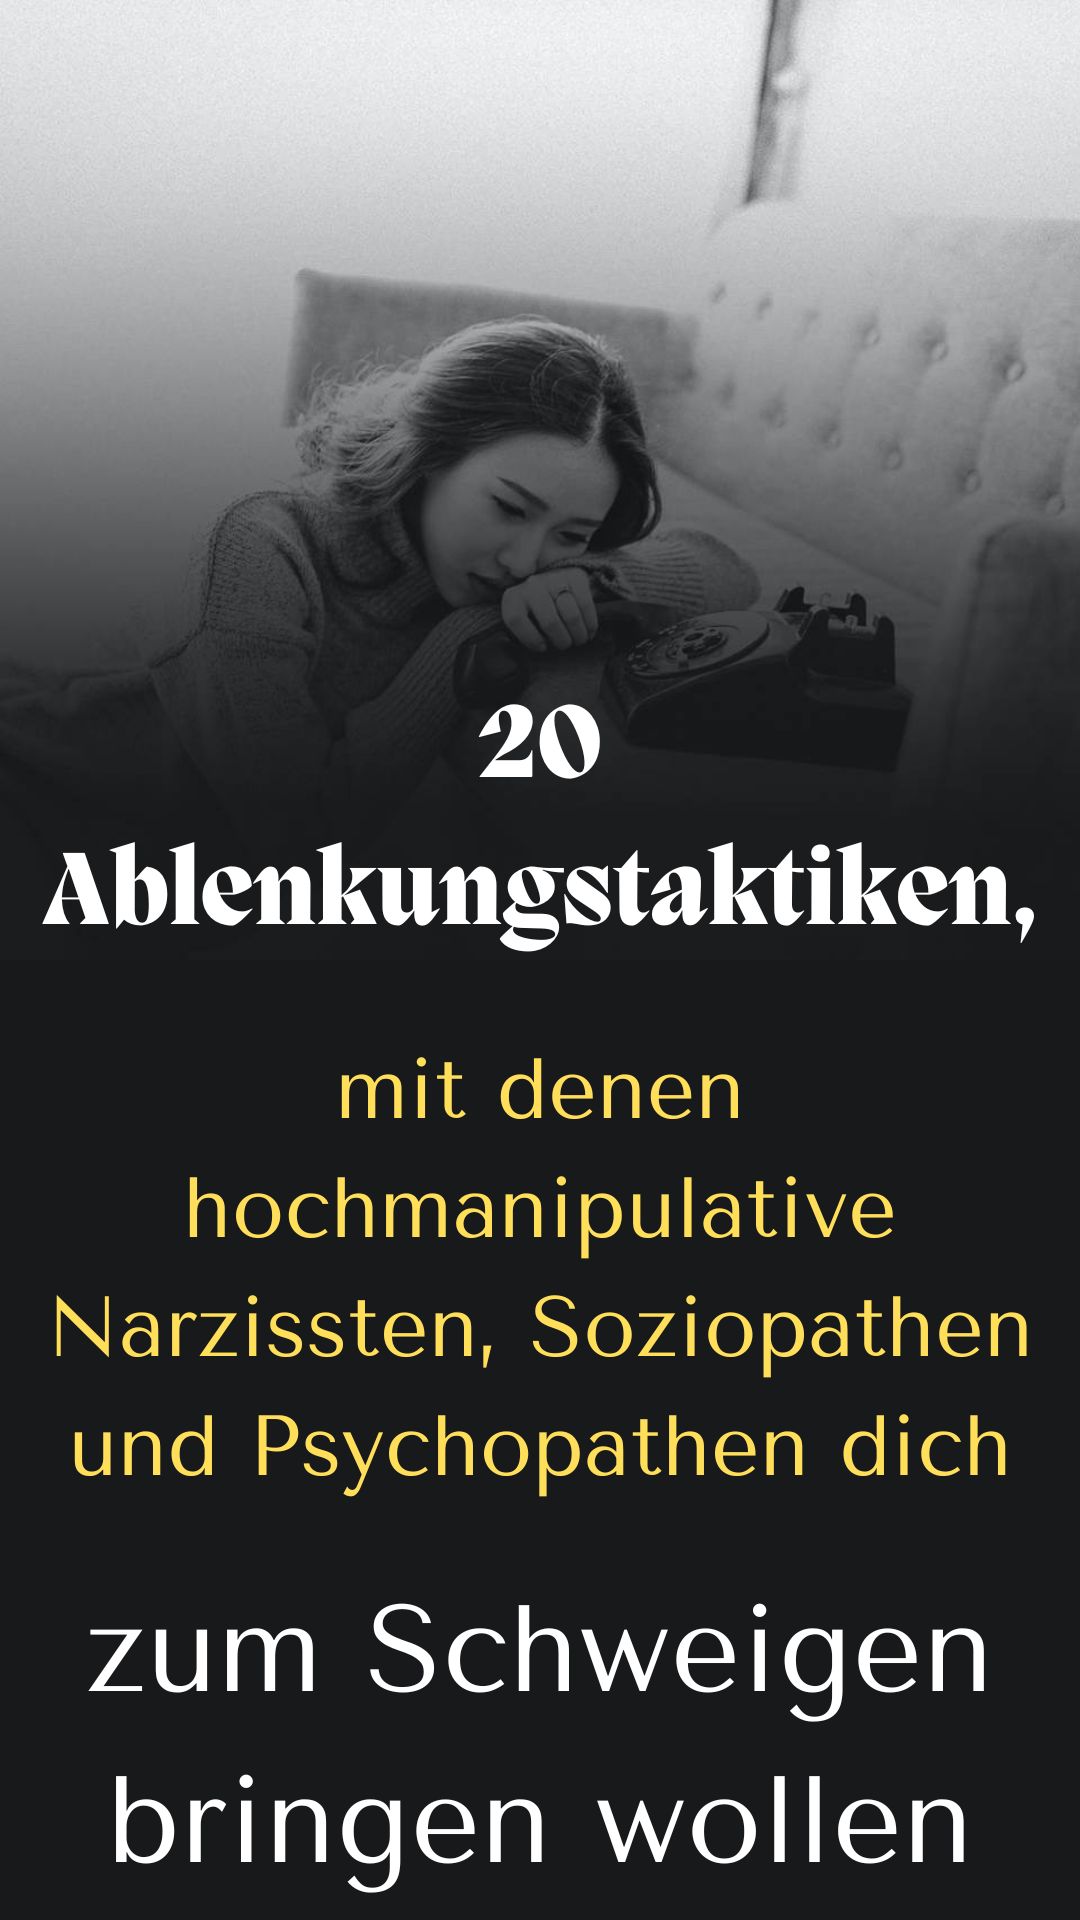 20-Ablenkungstaktiken-mit-denen-hochmanipulative-Narzissten-Soziopathen-und-Psychopathen-dich-zum-Schweigen-bringen-wollen